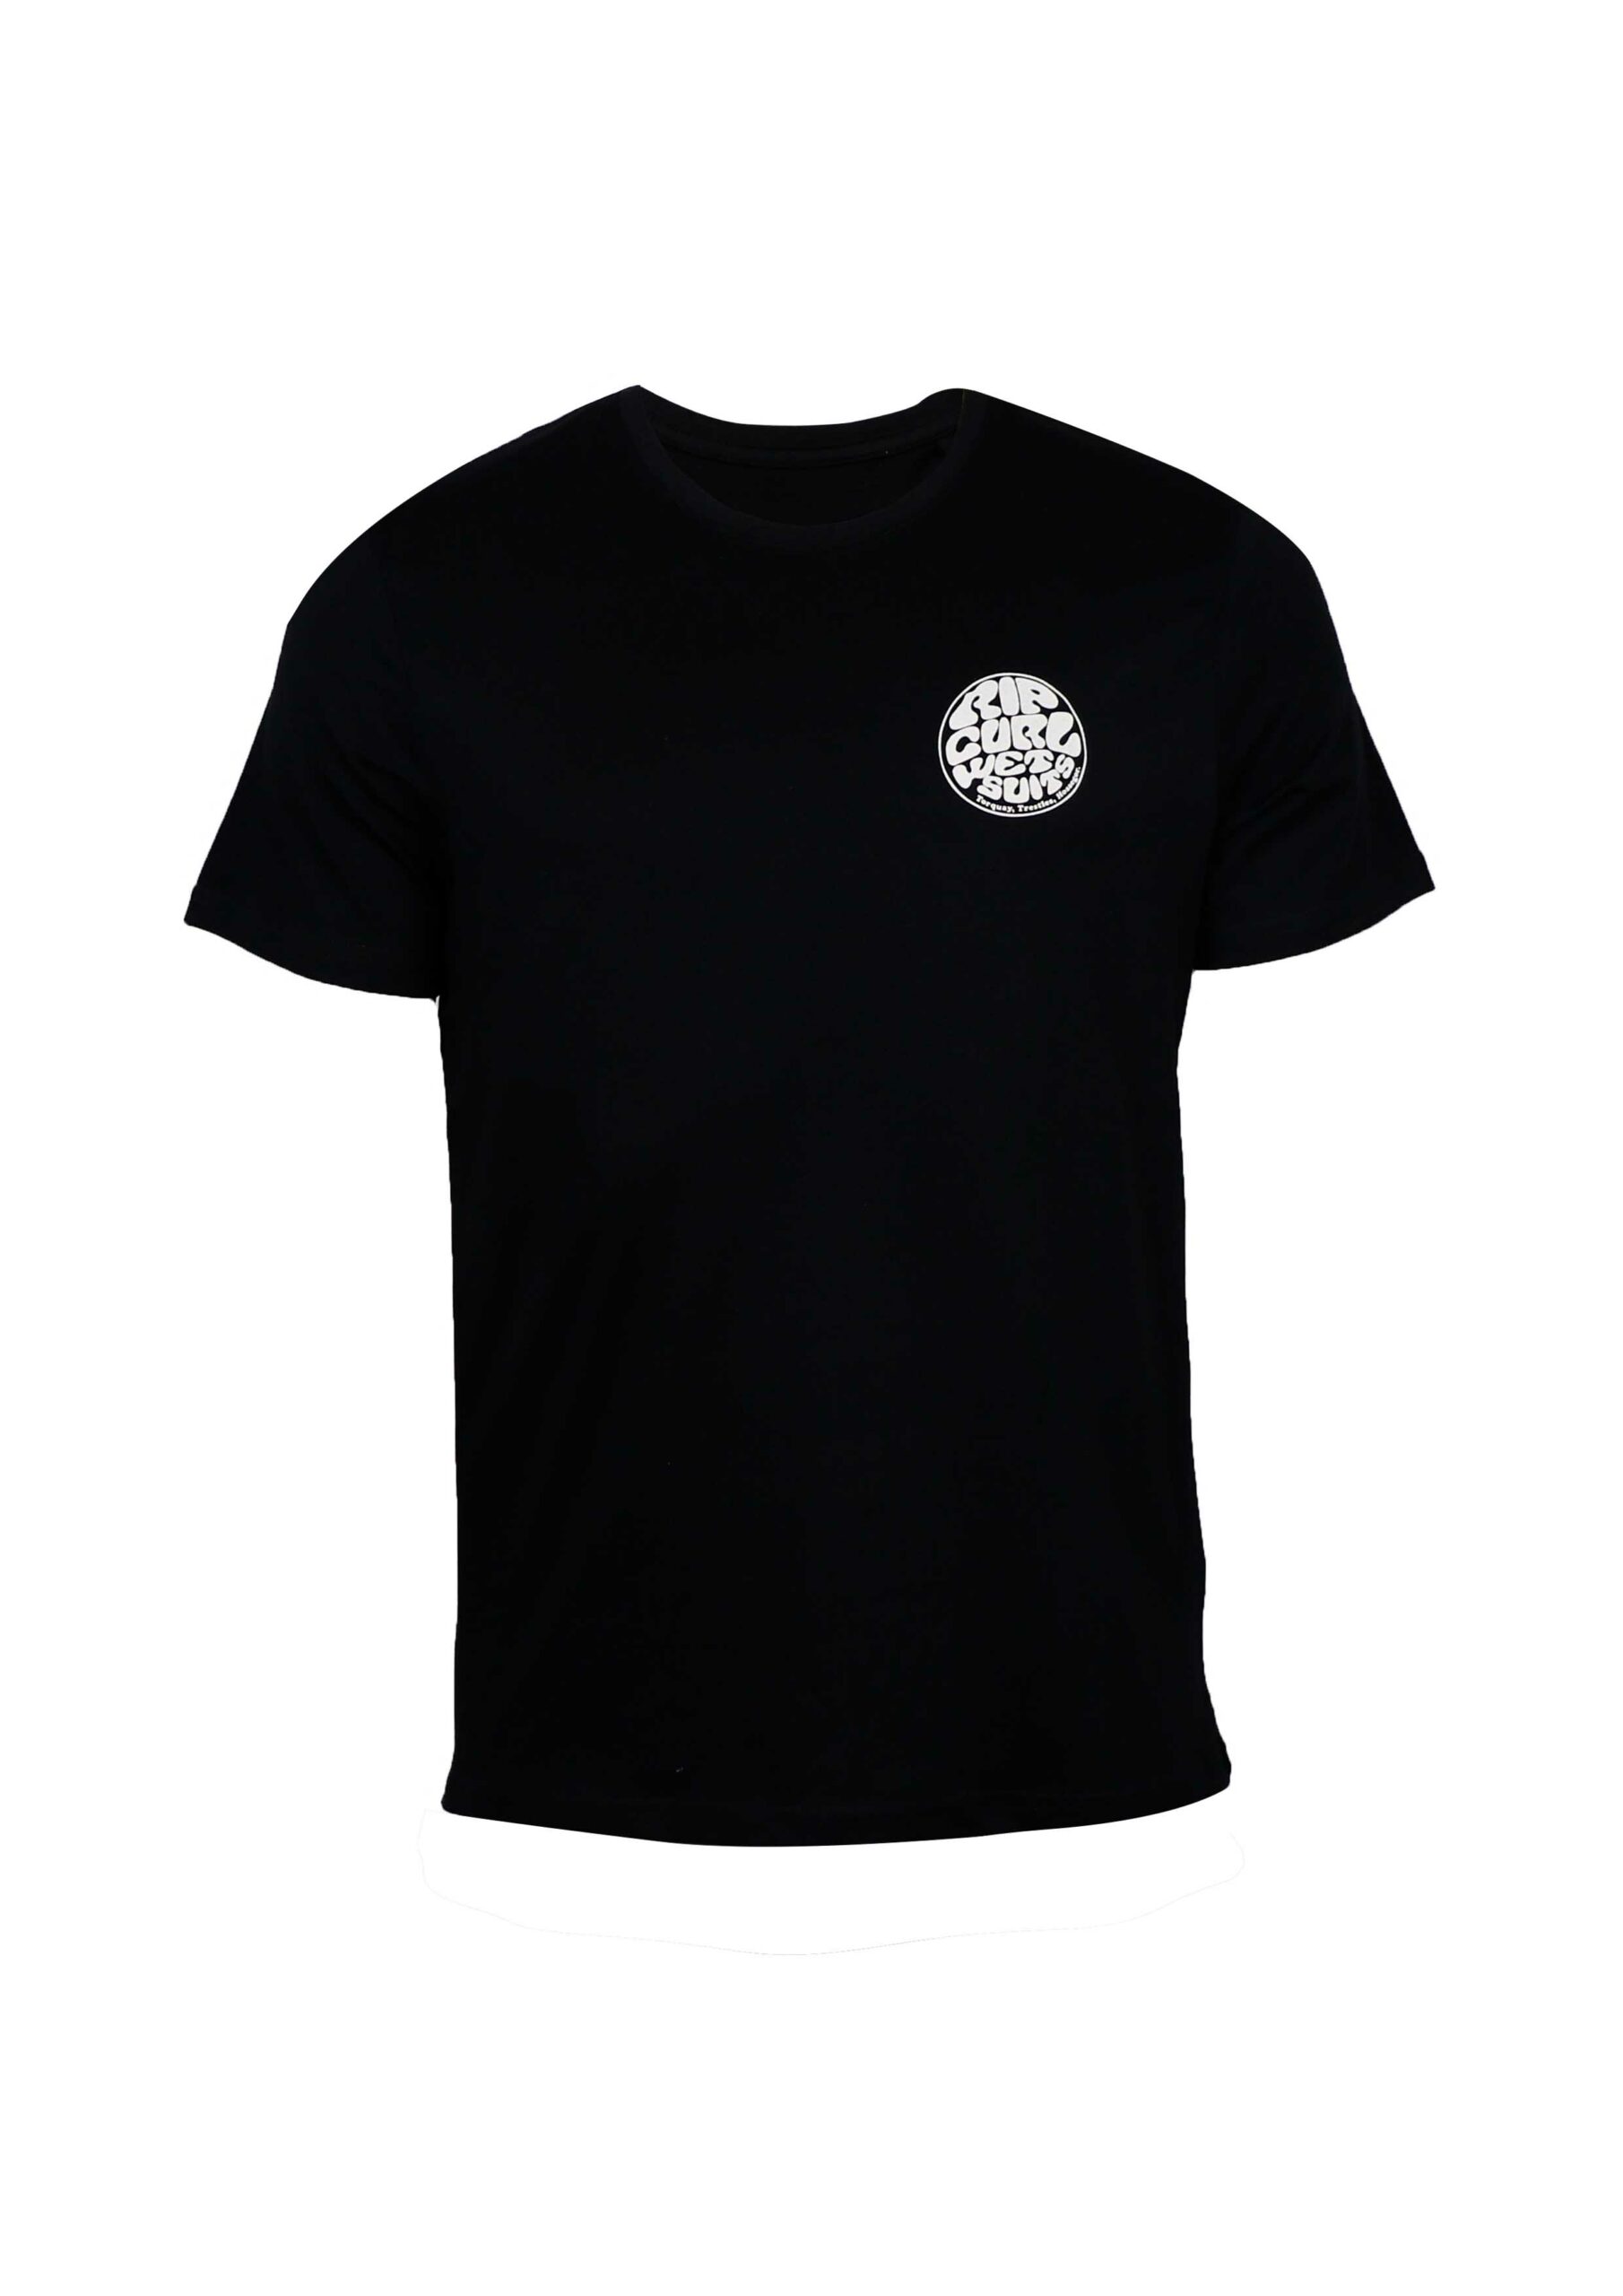 Men’s T-shirt - Artisan Outfitters Ltd